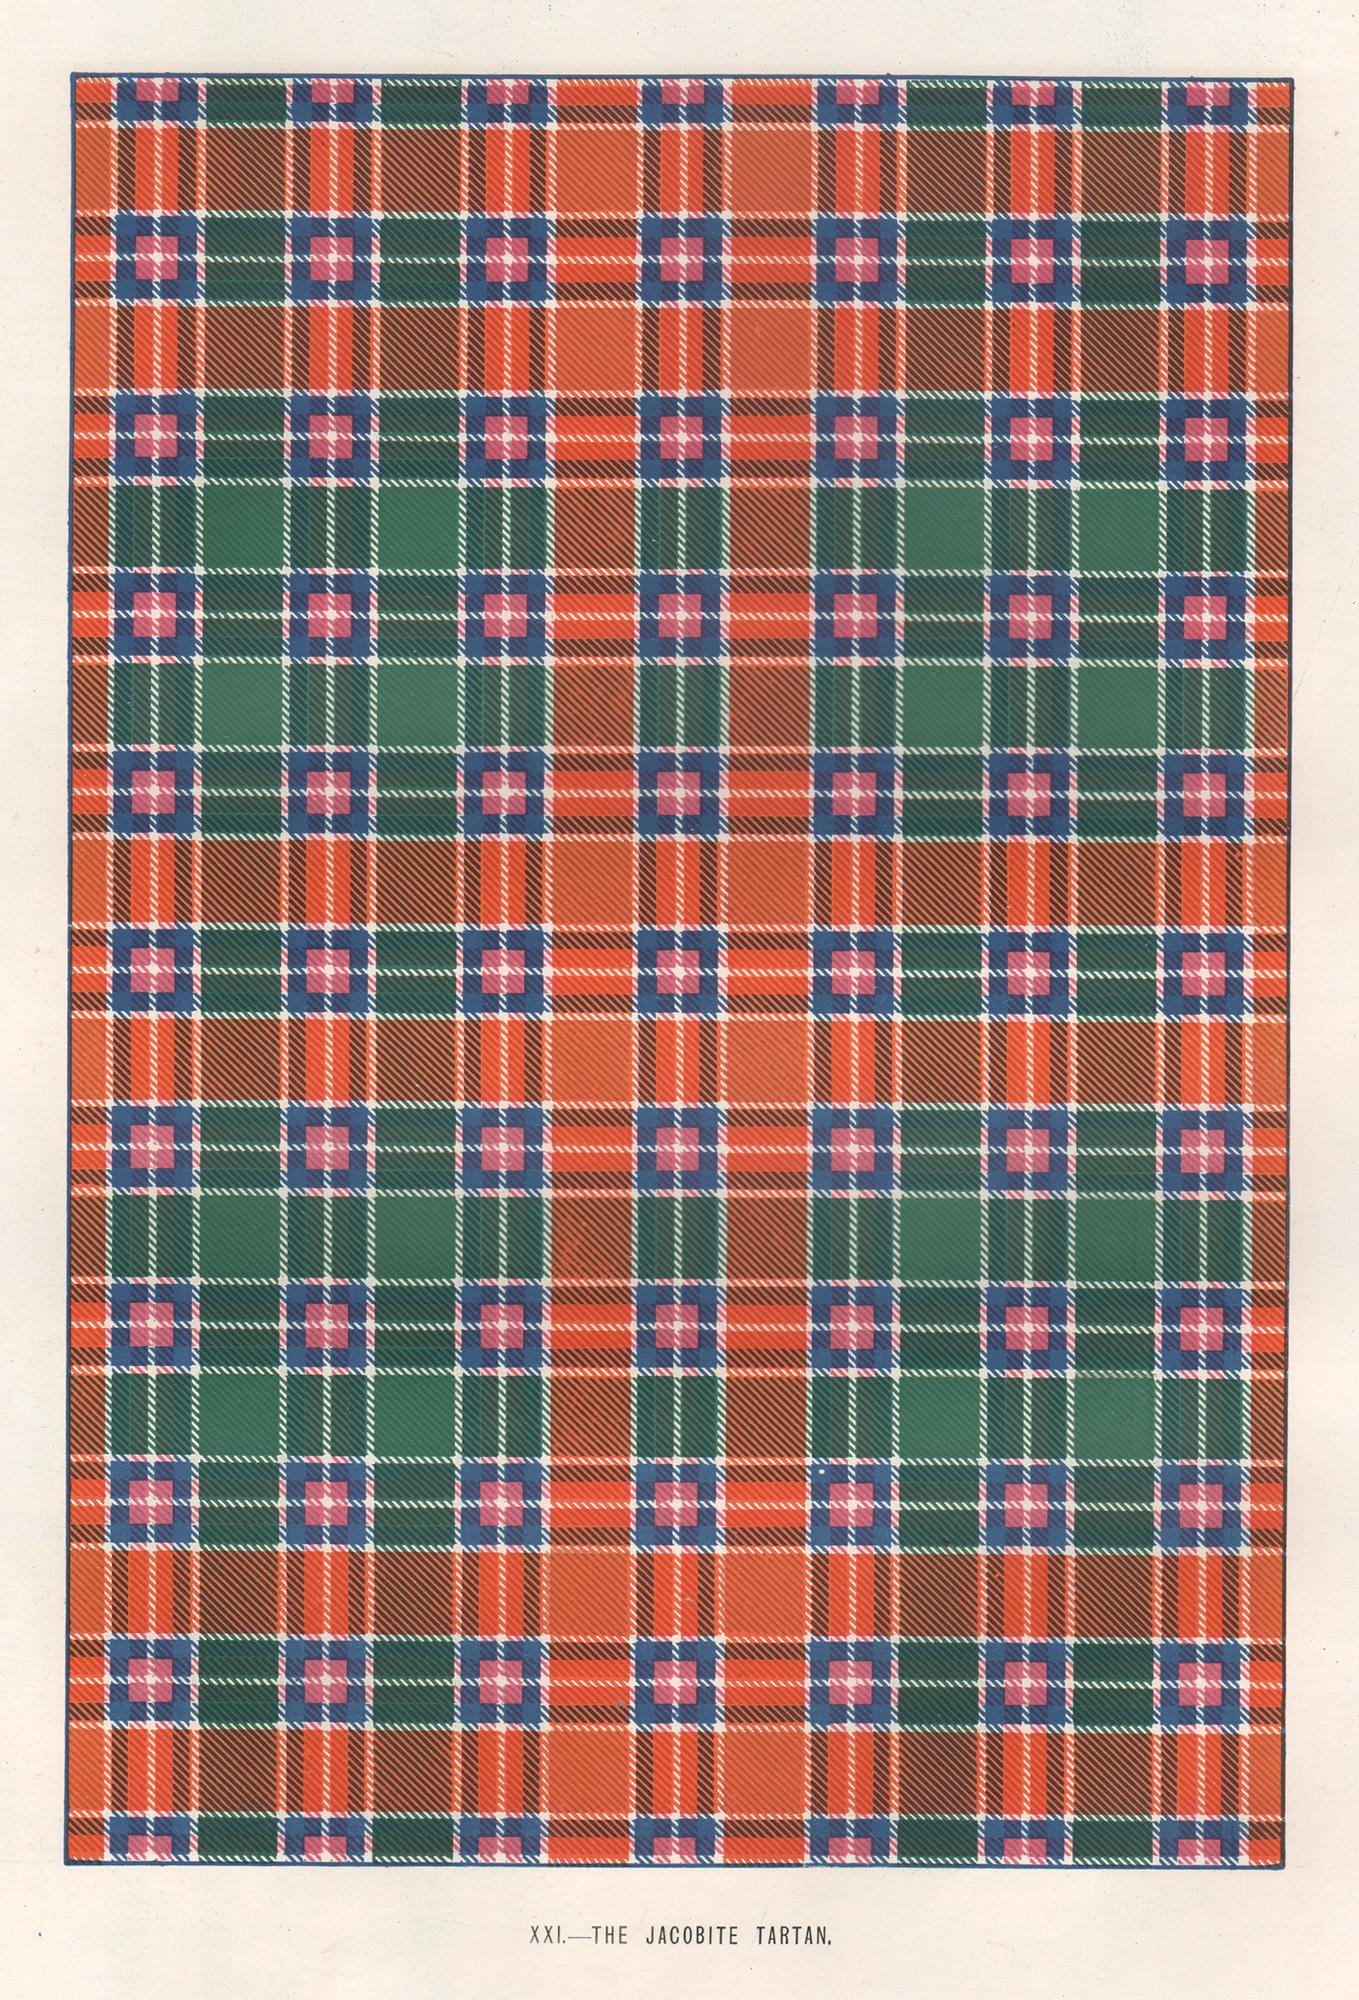 Abstract Print Unknown - Impression lithographique The Jacobite Tartan, Écosse écossaise d'art